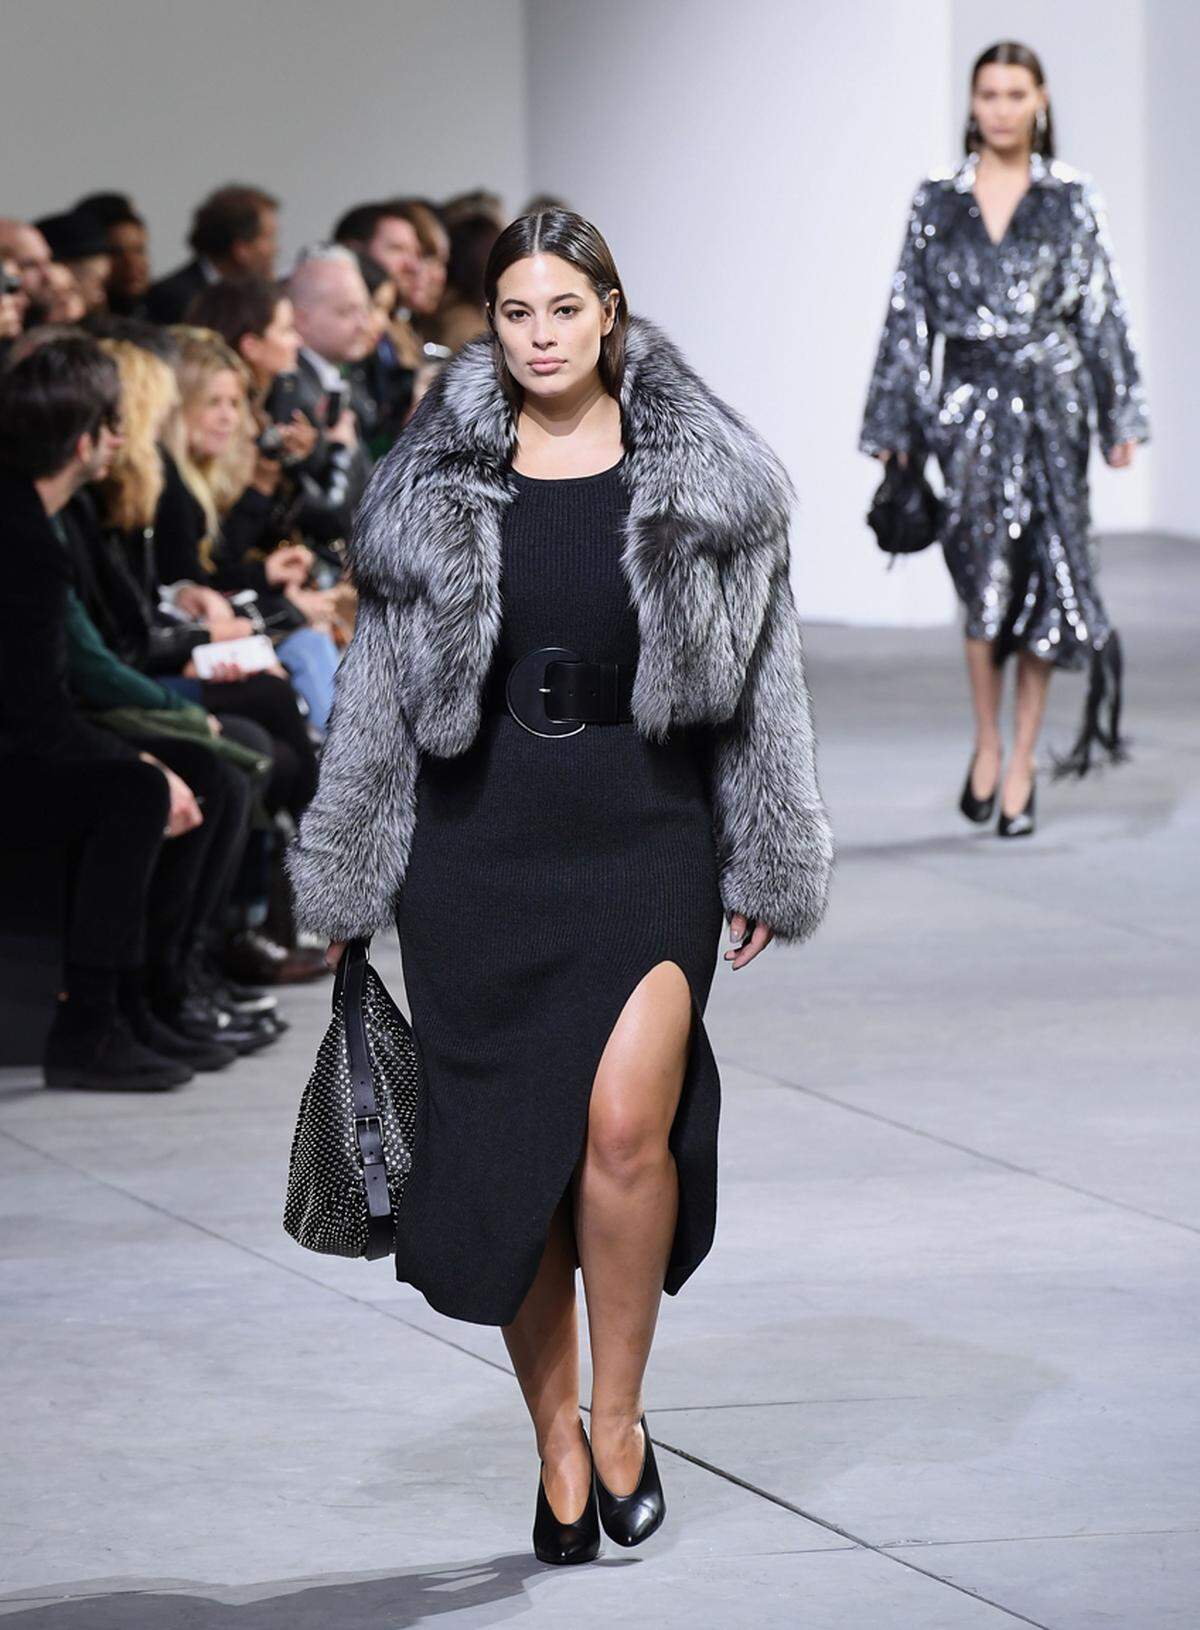 Michael Kors hat bei seiner Catwak-Show im Zuge der New York Fashion Week zum ersten Mal auf ein Plus Size Model zurückgegriffen. Ashley Graham war auch schon auf dem Cover der "Vogue" und in der Bademodeausgabe von "Sport's Illustrated" zu sehen.